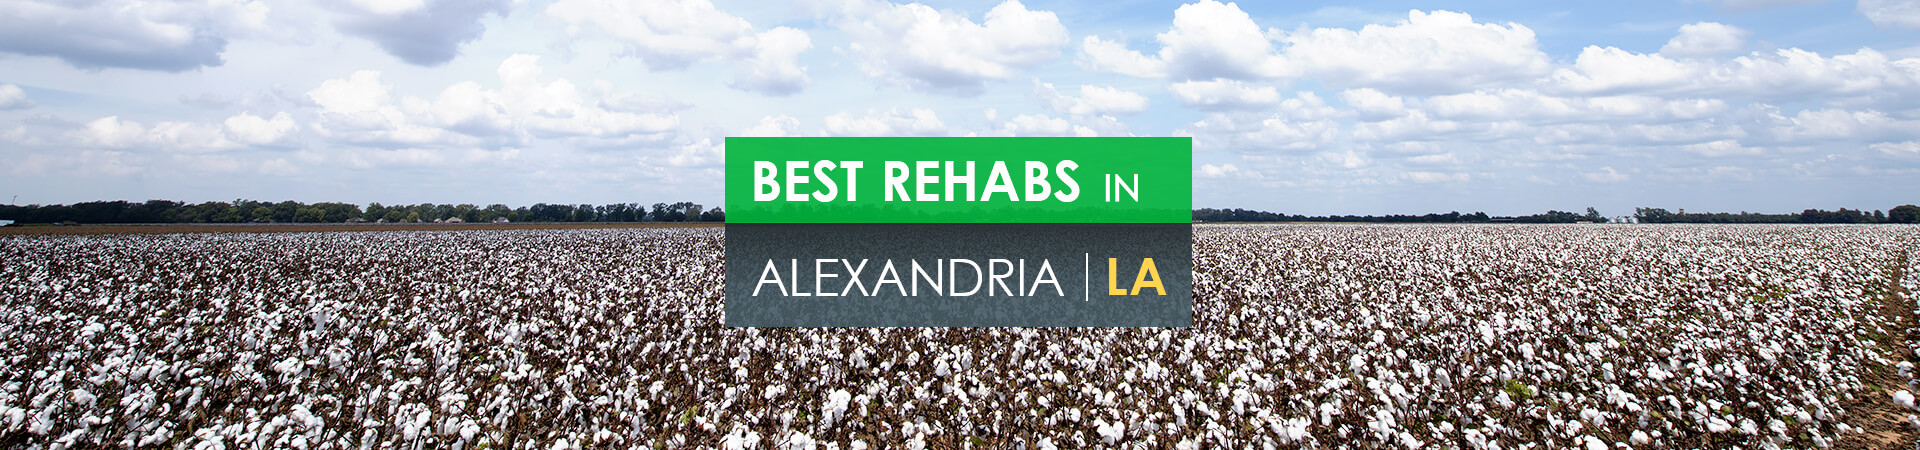 Best rehabs in Alexandria, LA